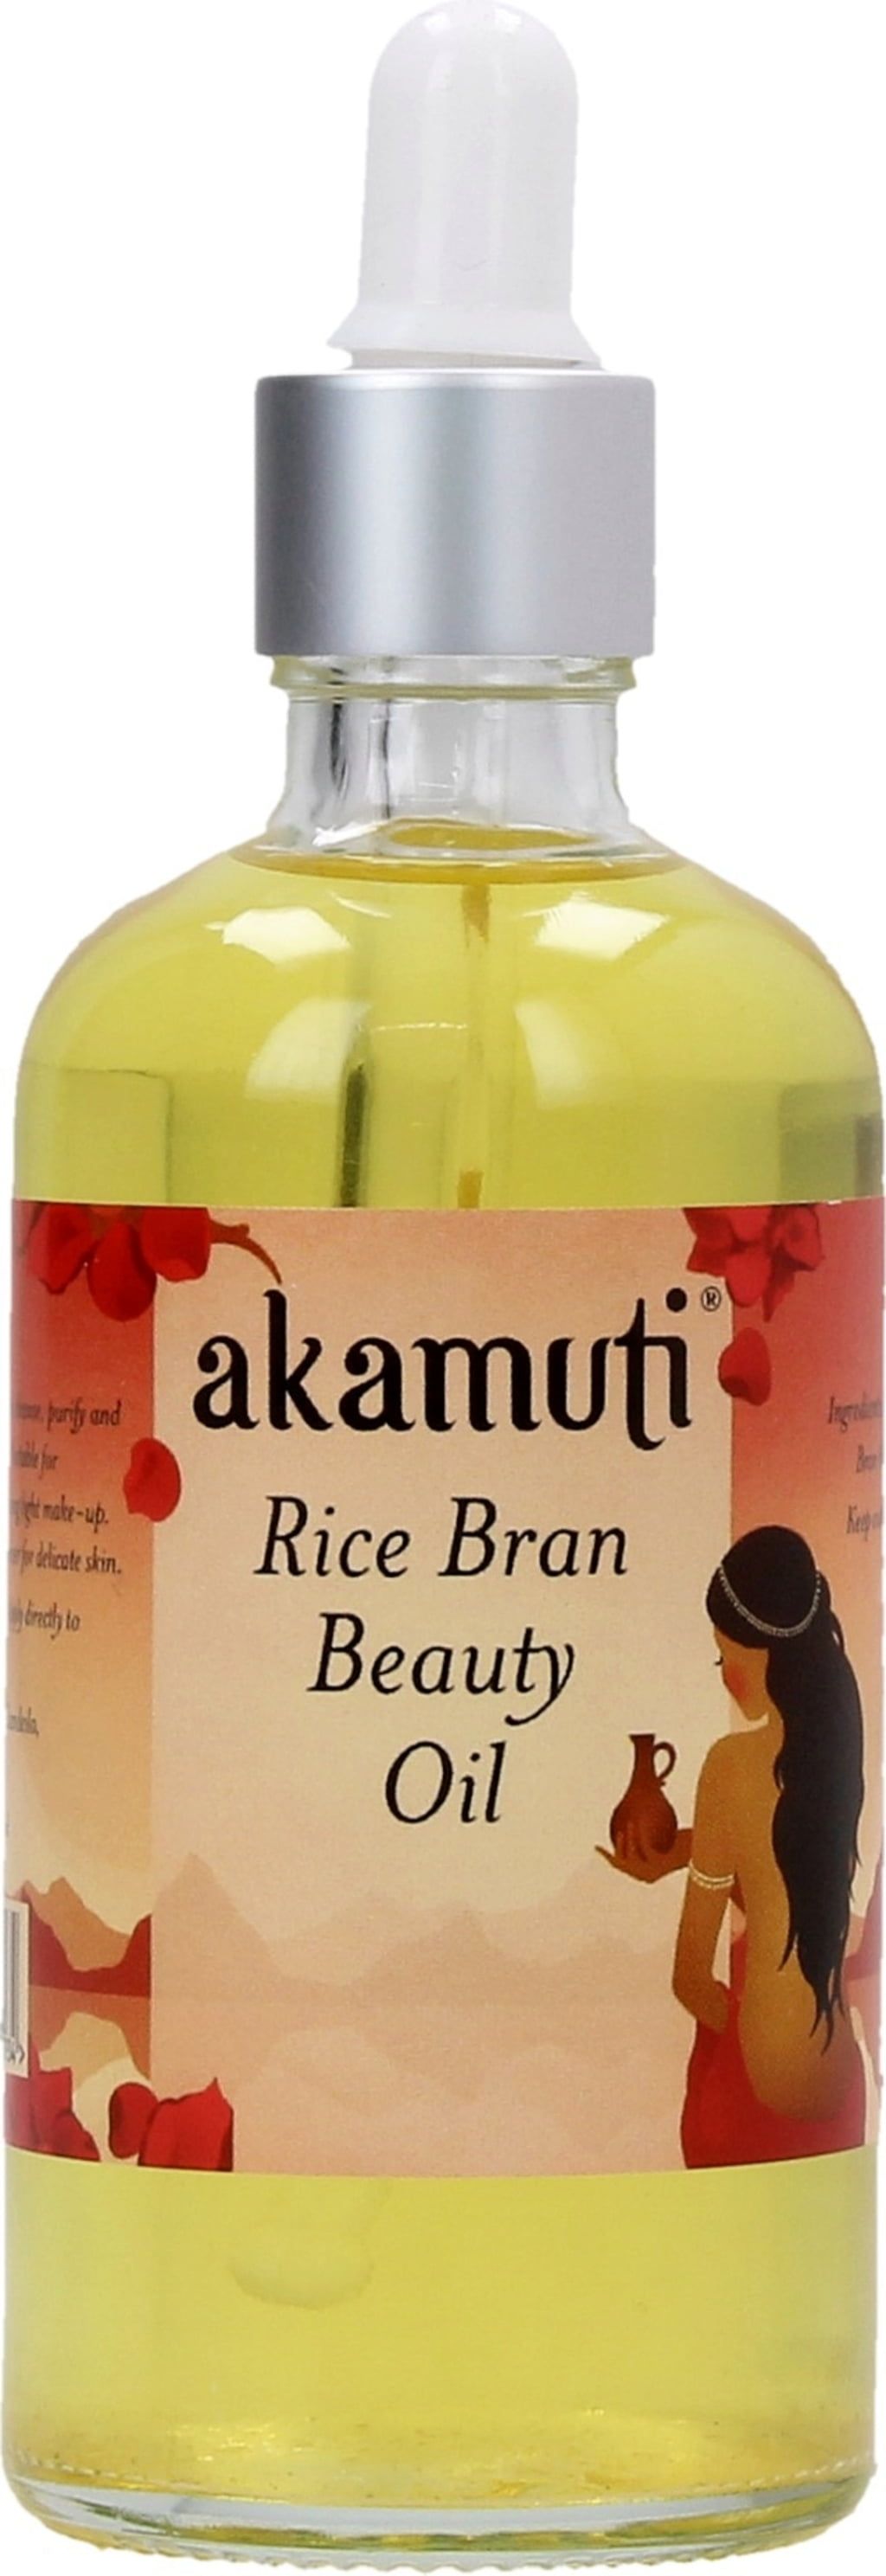 Japonski lepotilno olje iz riževih otrobov - 100 ml